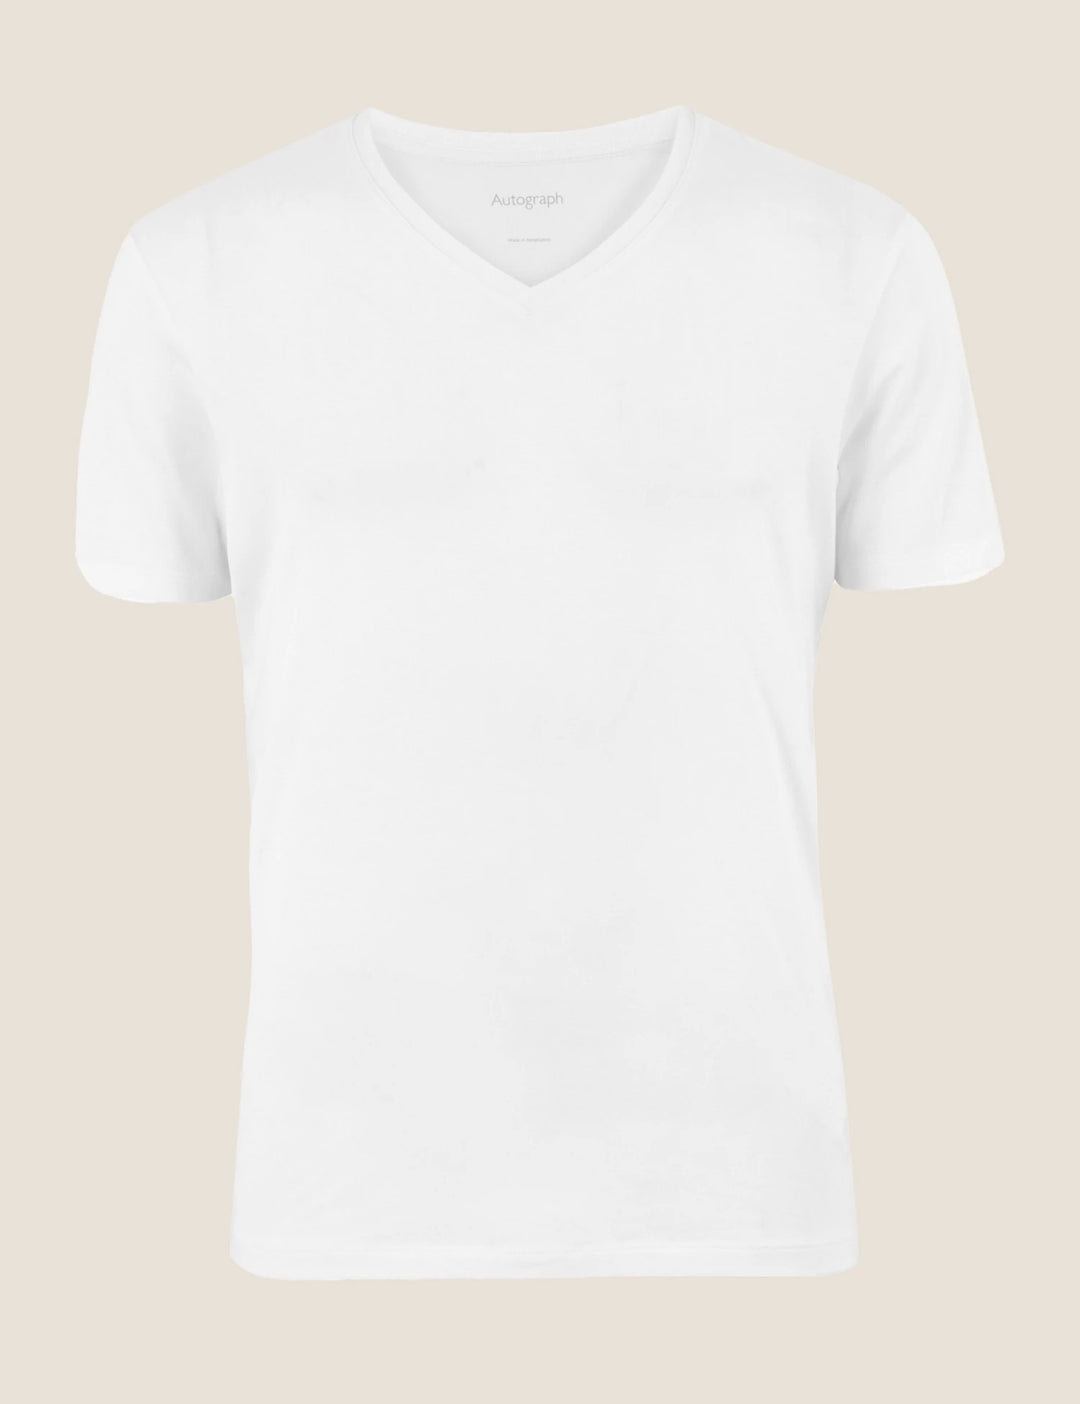 M&S Men S/S Modale Plain V-Neck T-Shirt T14/1680A